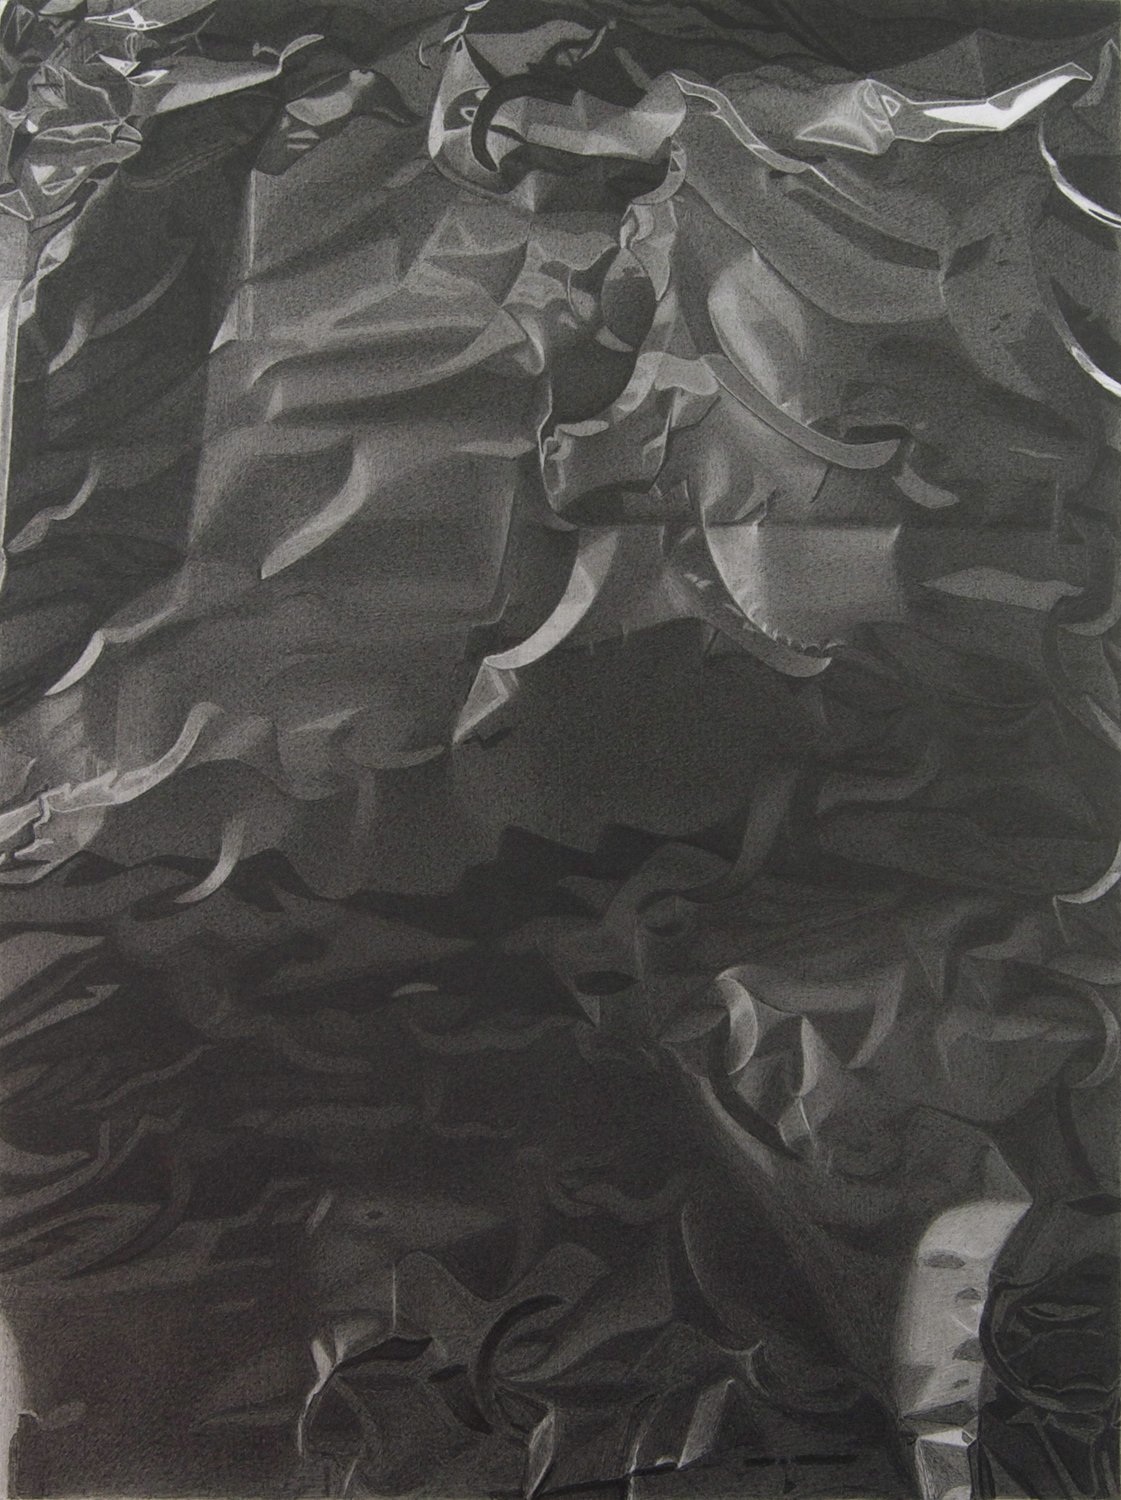  Foil  12x16”, graphite on paper, 2009   